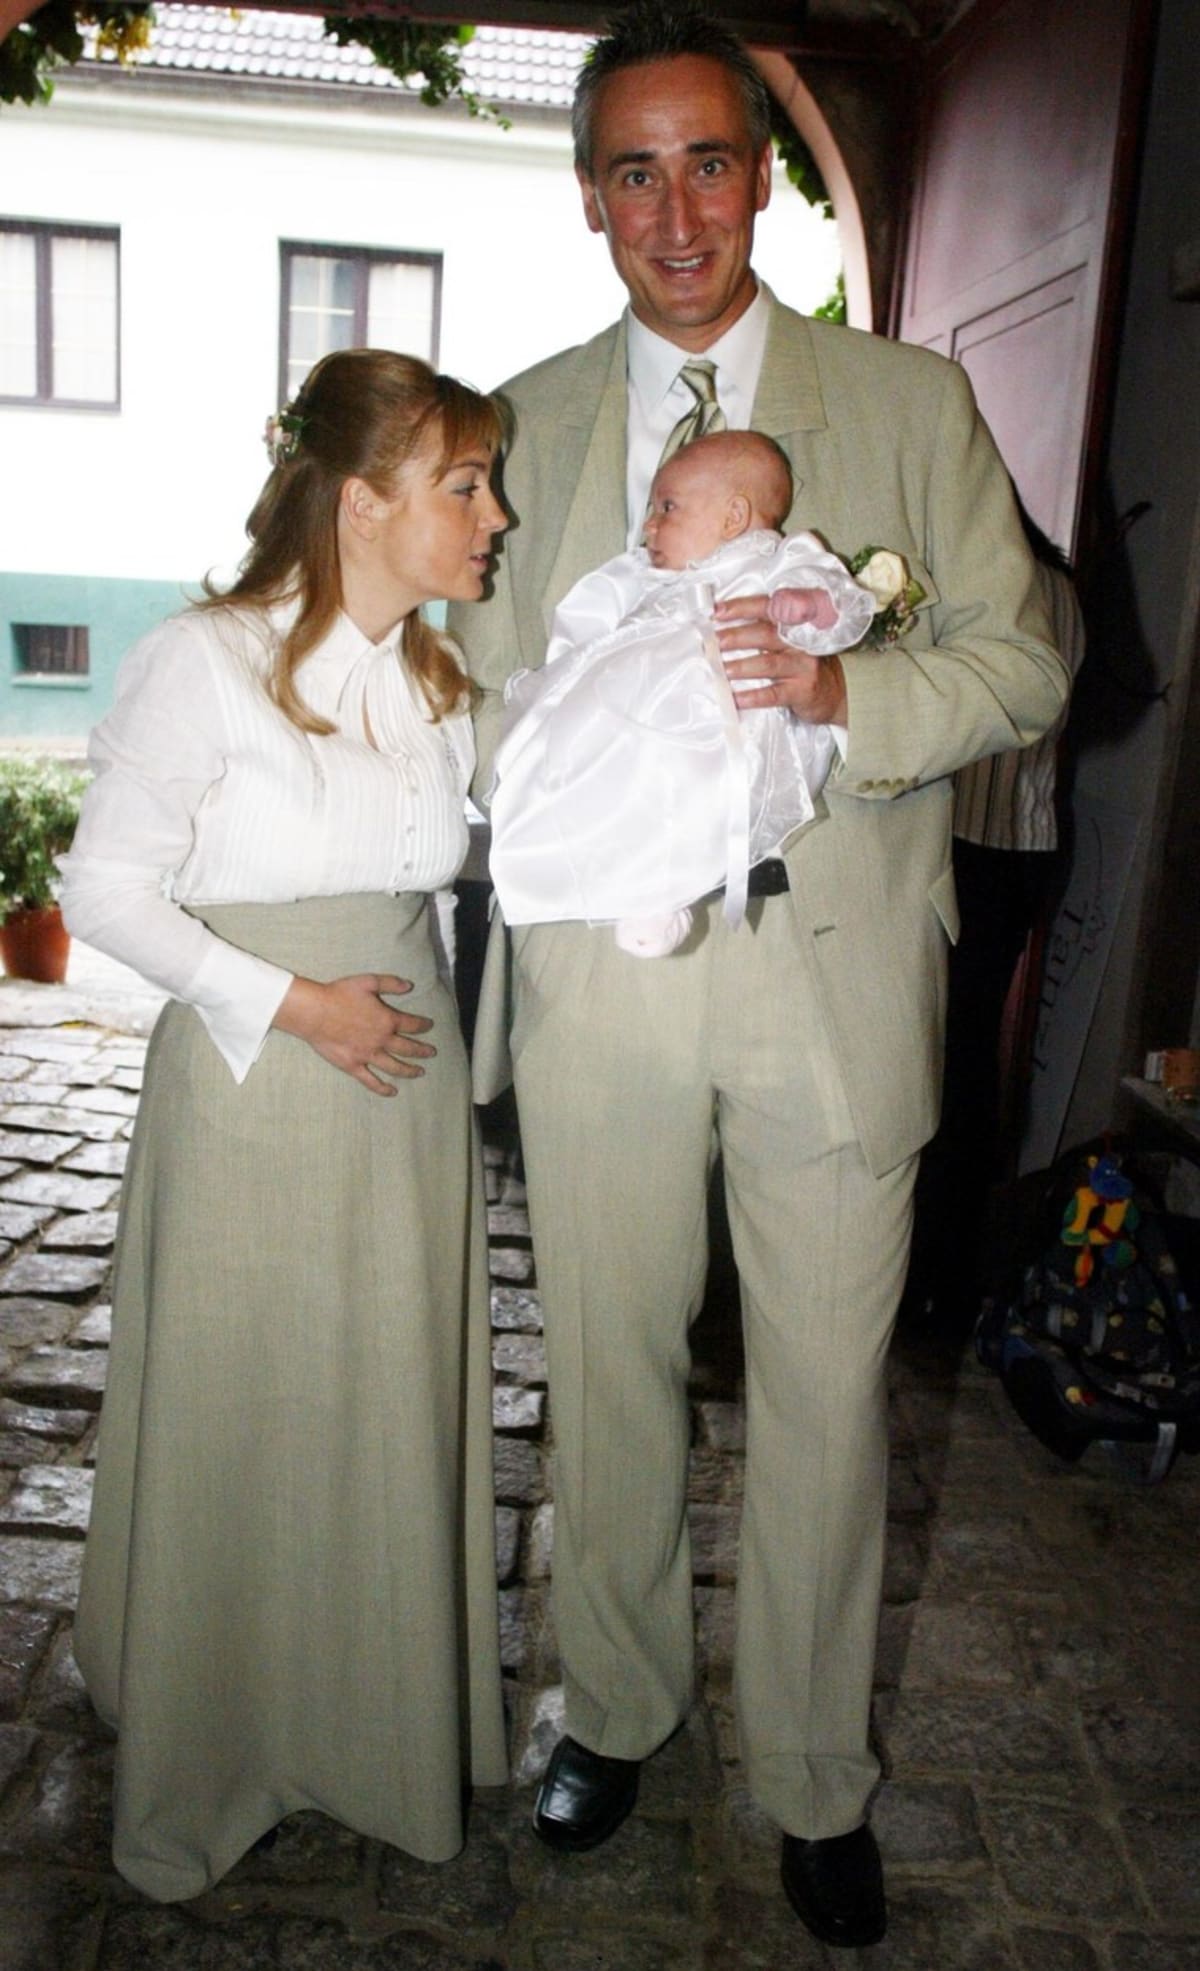 Křtiny, s exmnaželem Janem Bubeníkem a prvorozeným dítětem, dcera Matila se narodila v roce 2003 